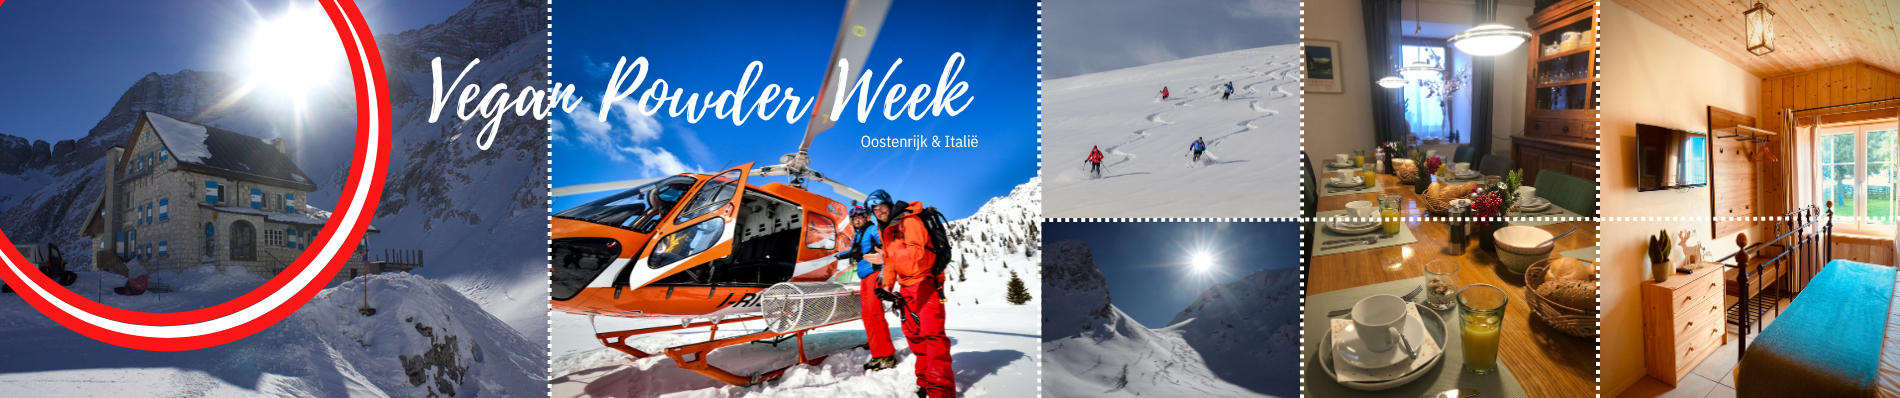 Vegan Powder Skiweek Oostenrijk en Italie heliski offpiste